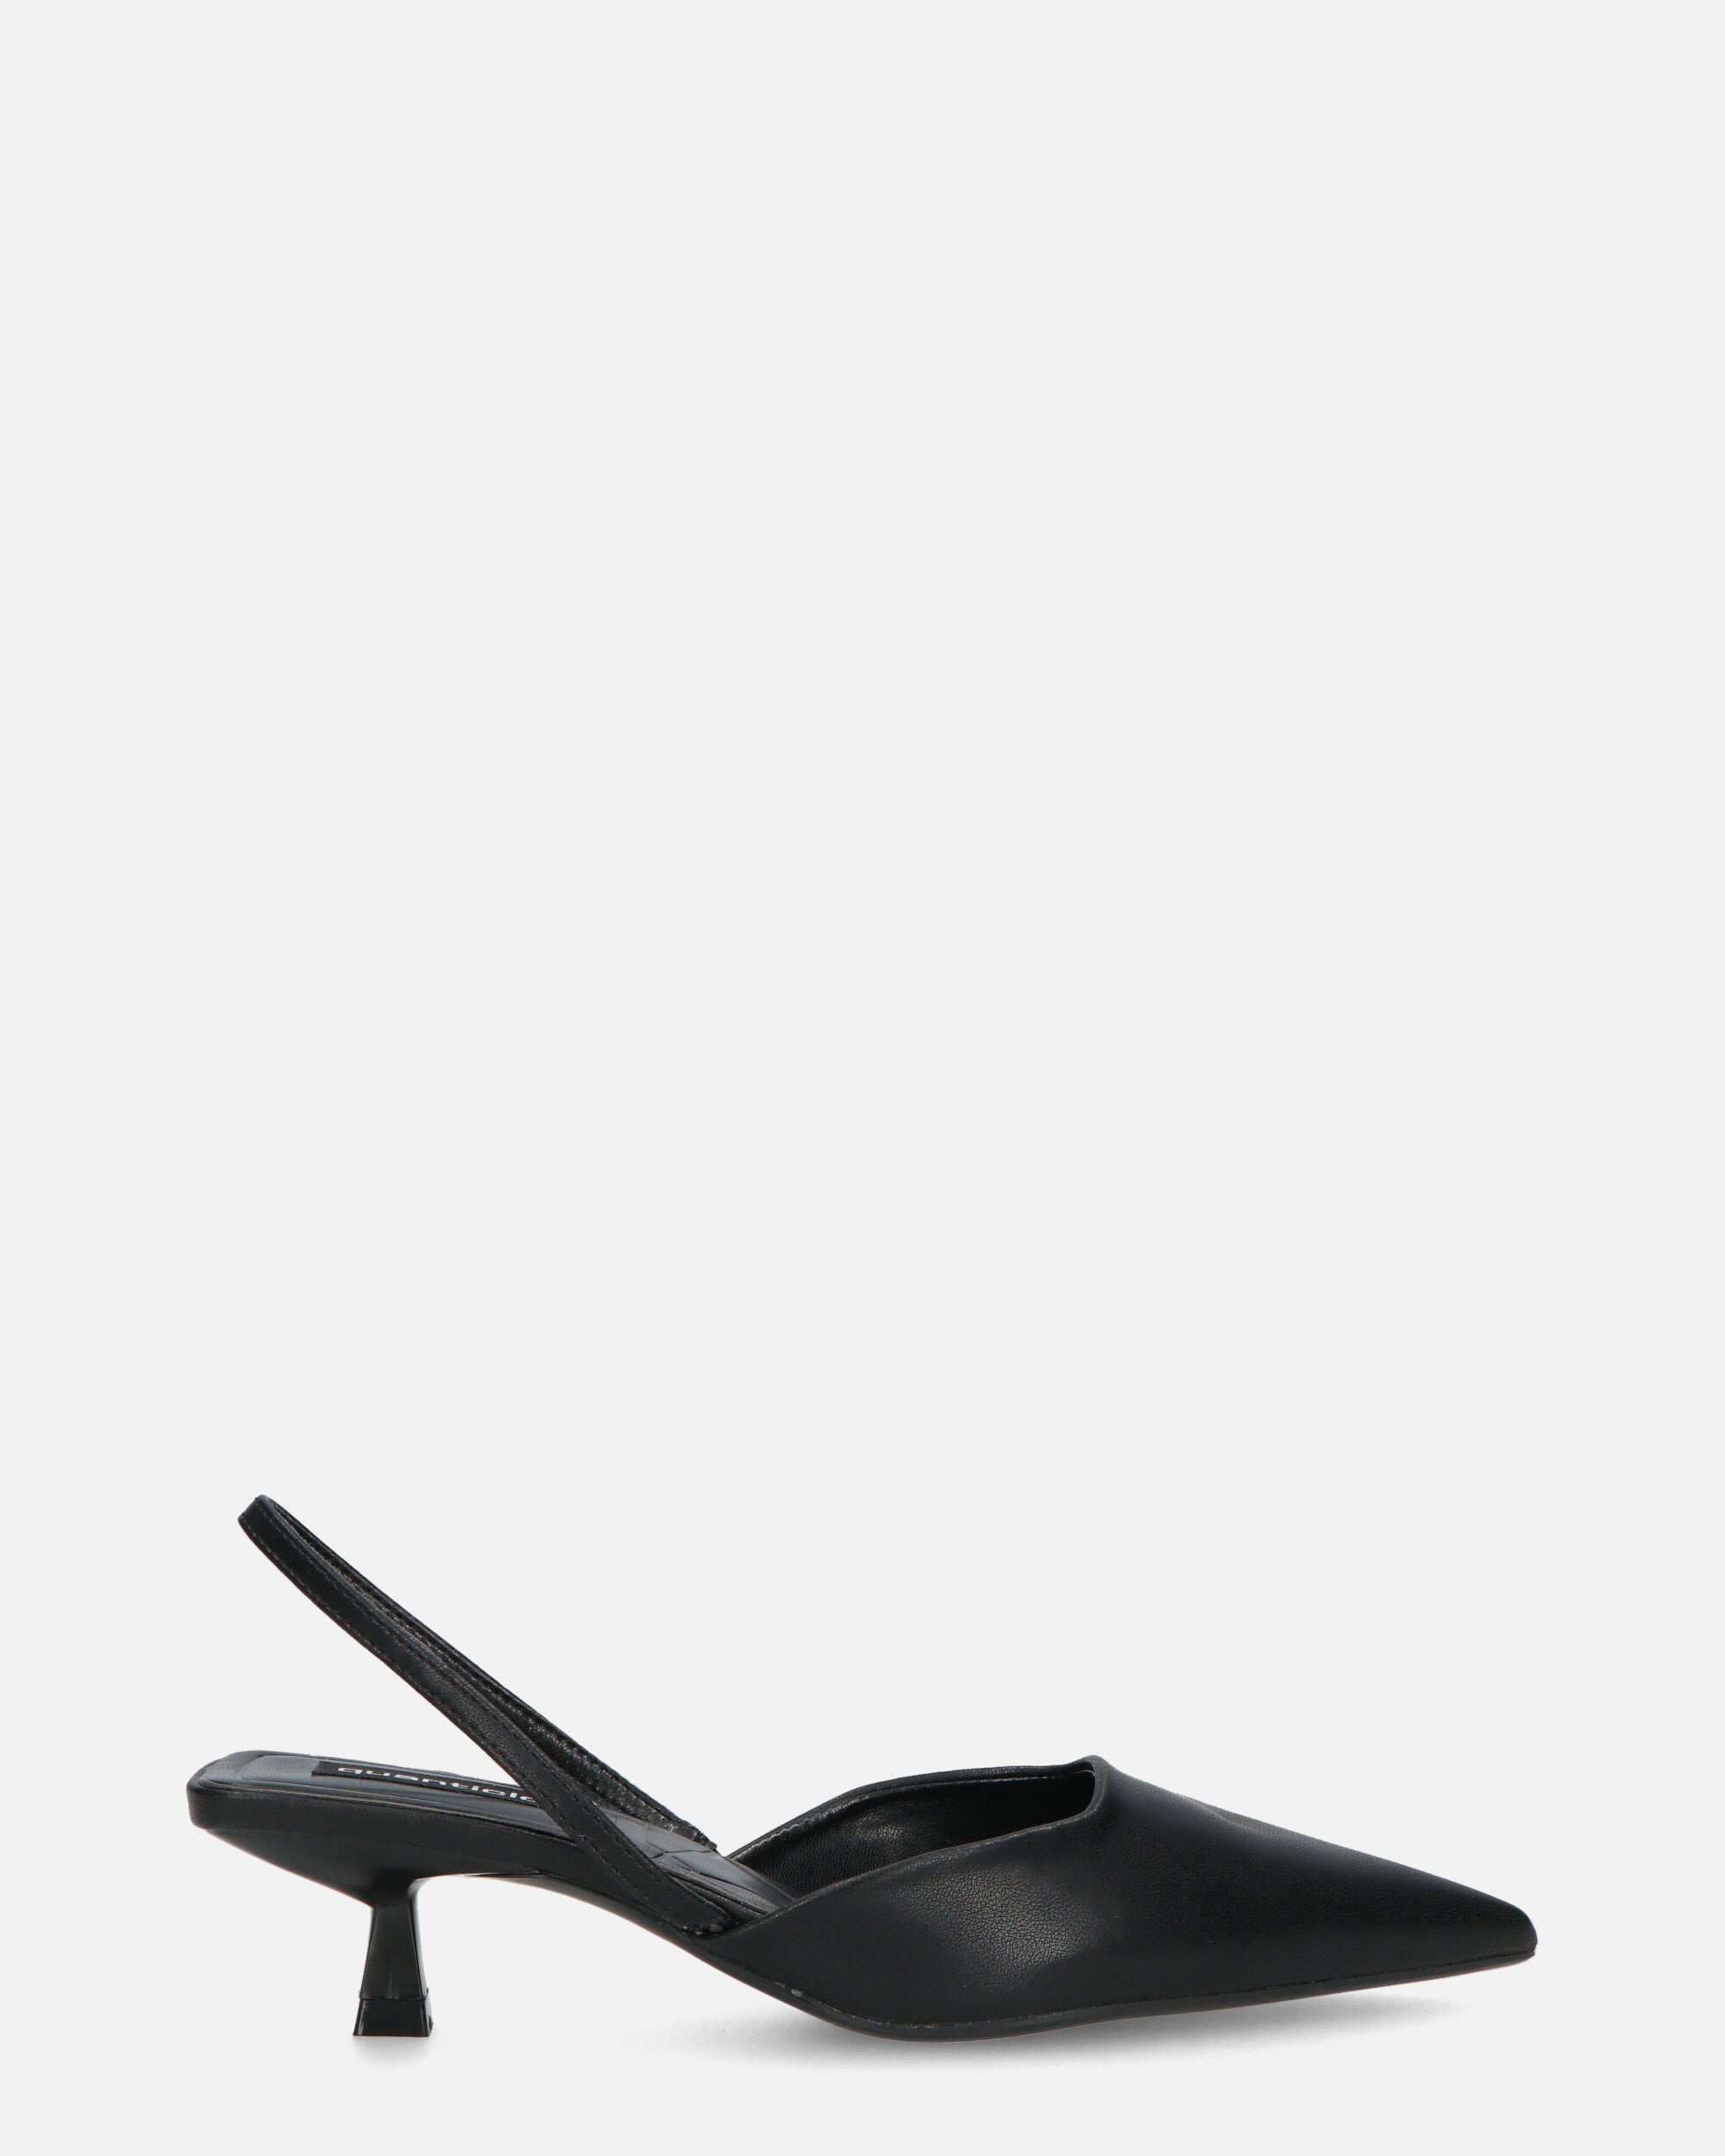 NIEVES - black slingback shoes with kitten heels